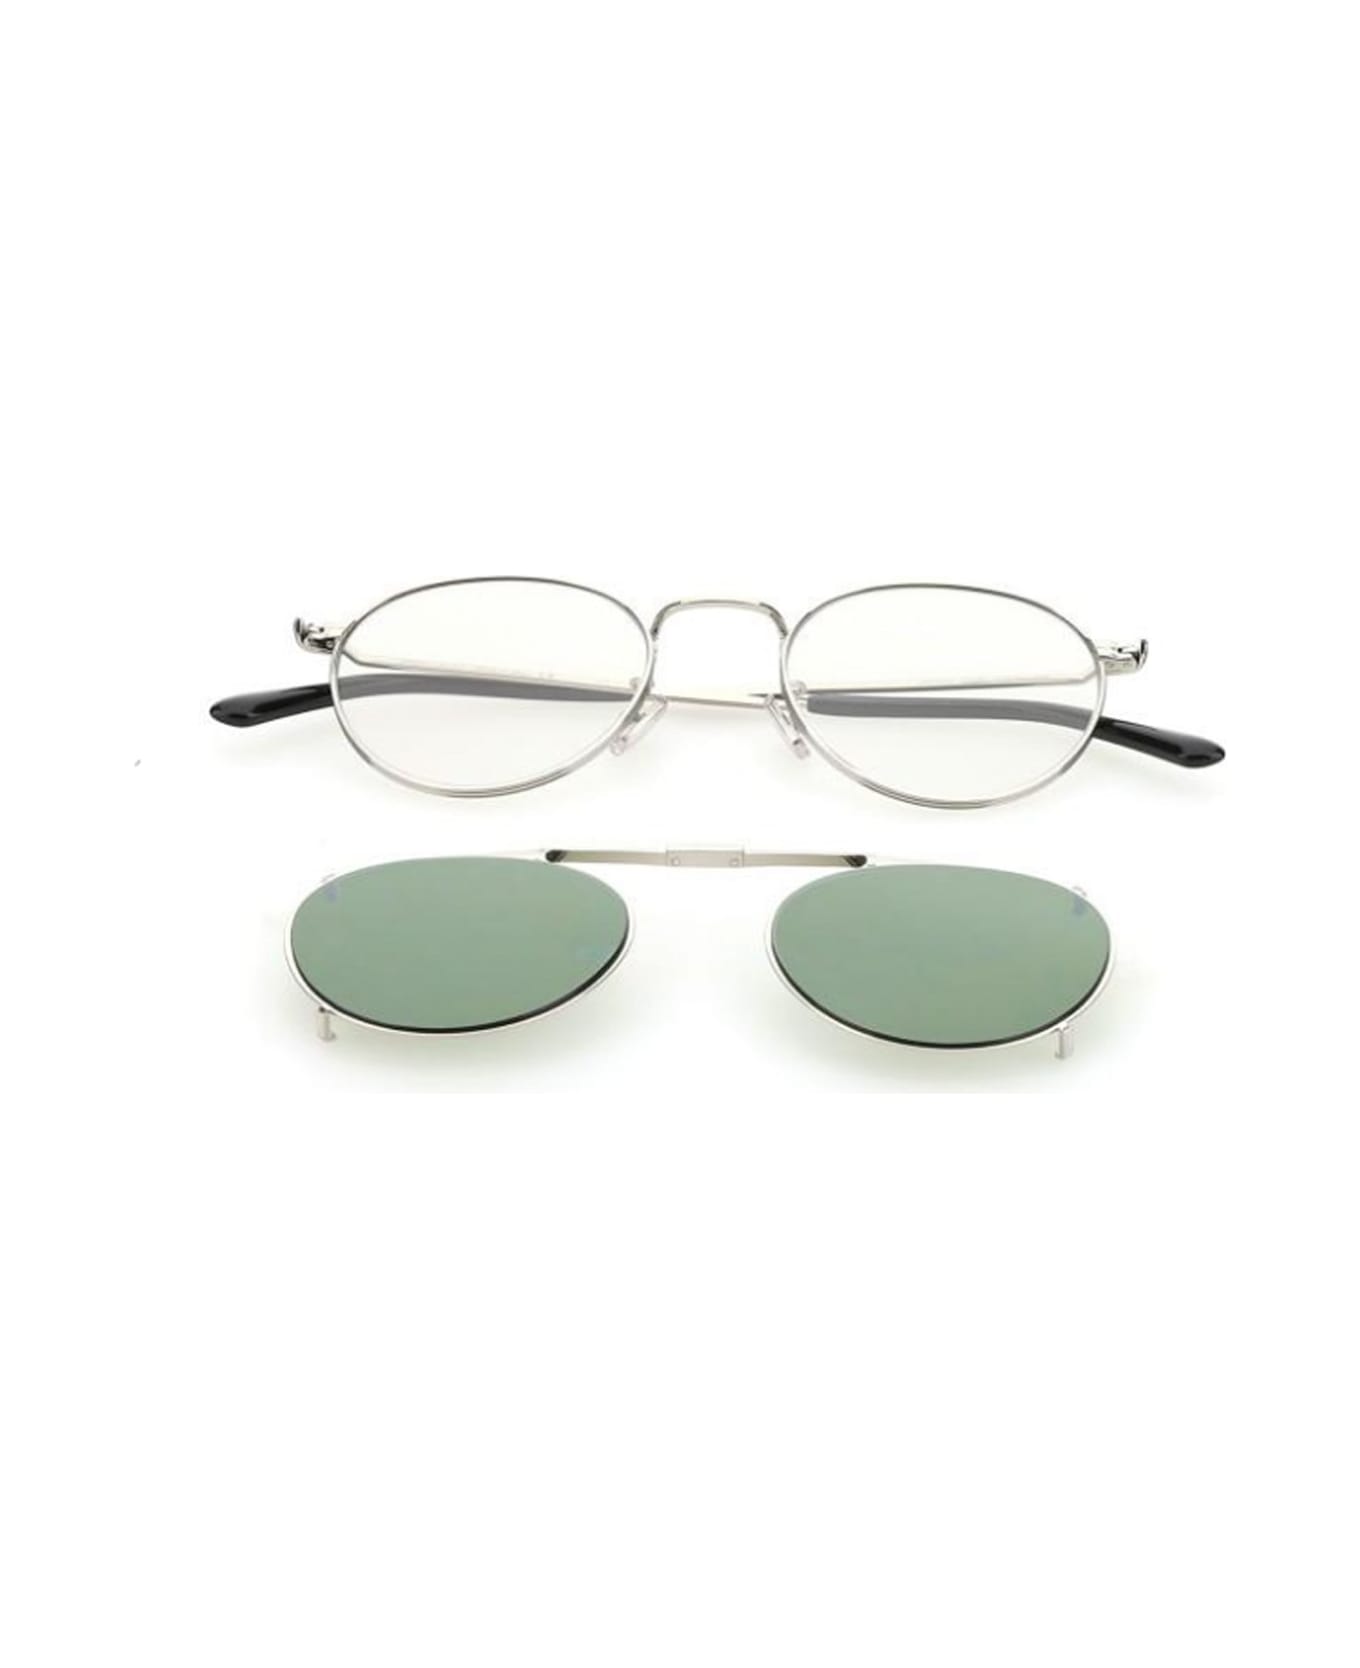 Jimmy Choo Eyewear Man Wynn/s Glasses - Argento